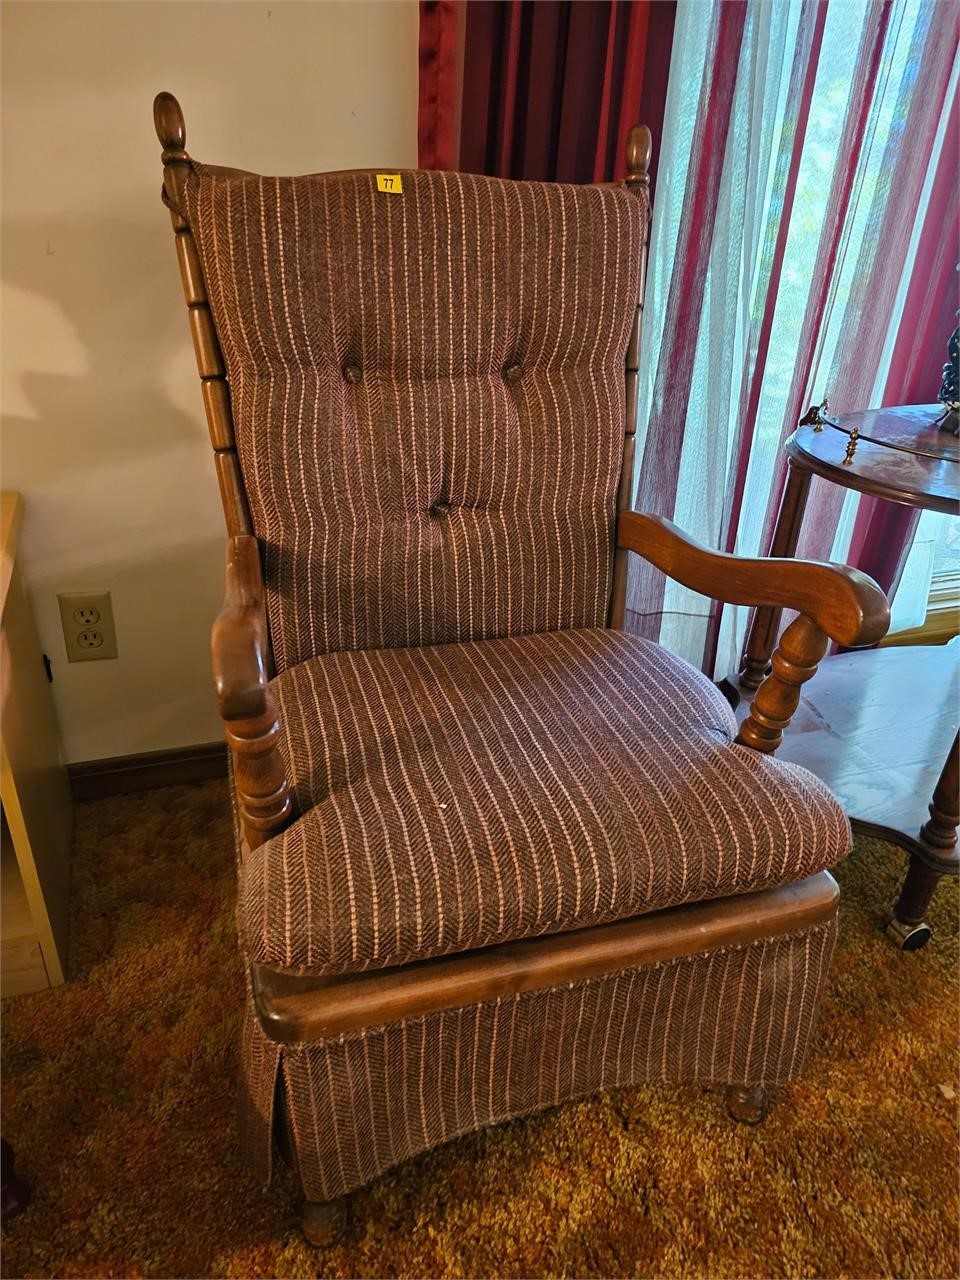 Spring rocker chair